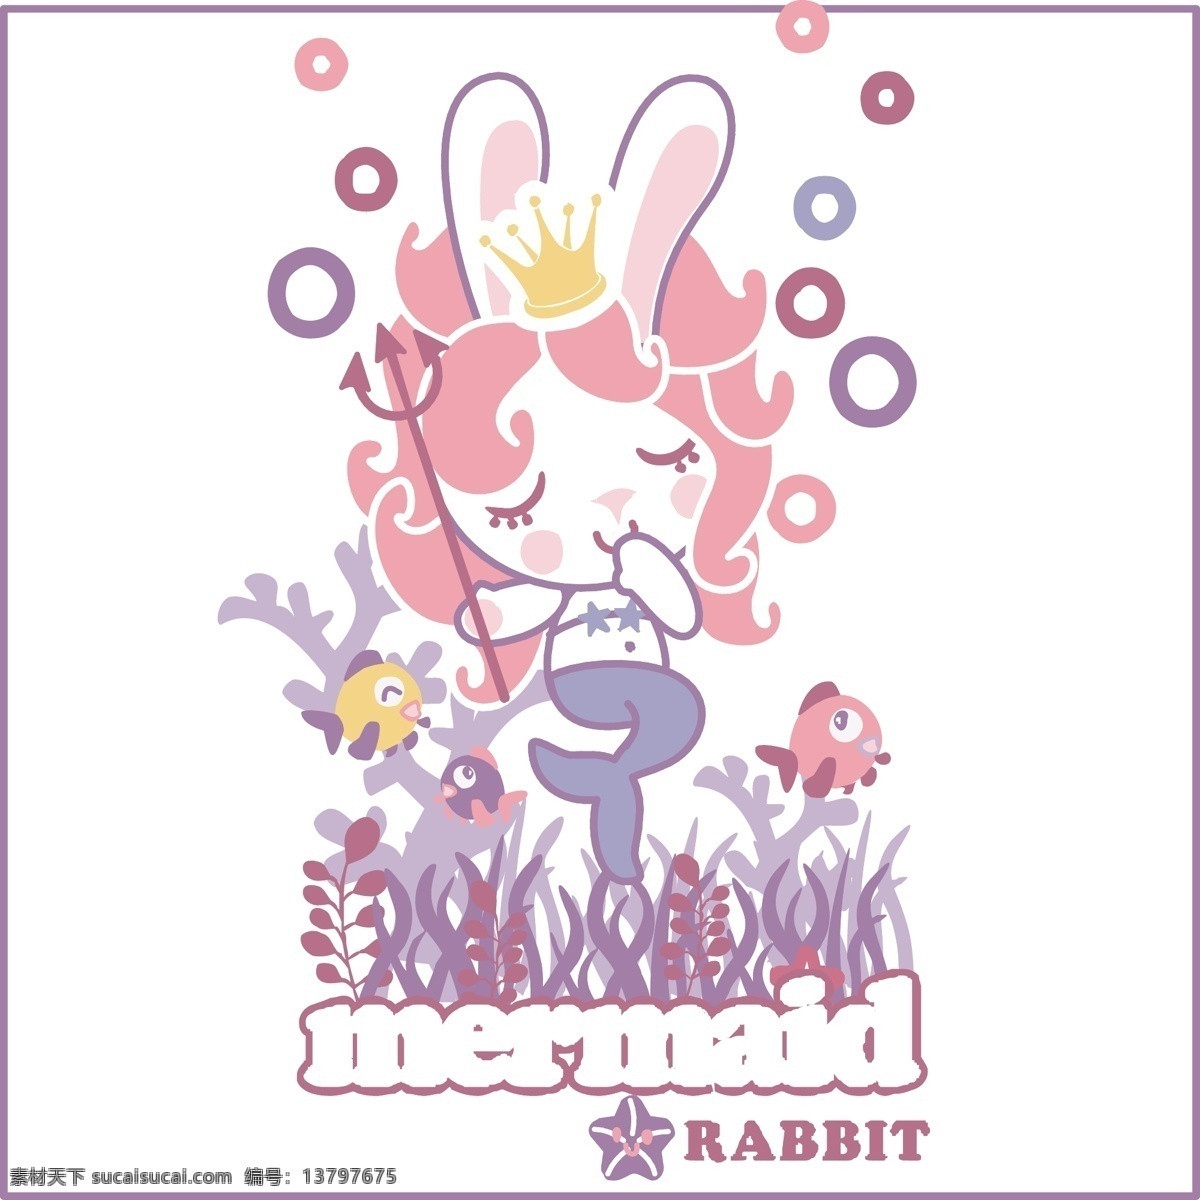 可爱 兔子 美人鱼 公主 女 人鱼公主卡通 可爱兔子 吸允手指女孩 美人鱼公主 卡通设计 白色